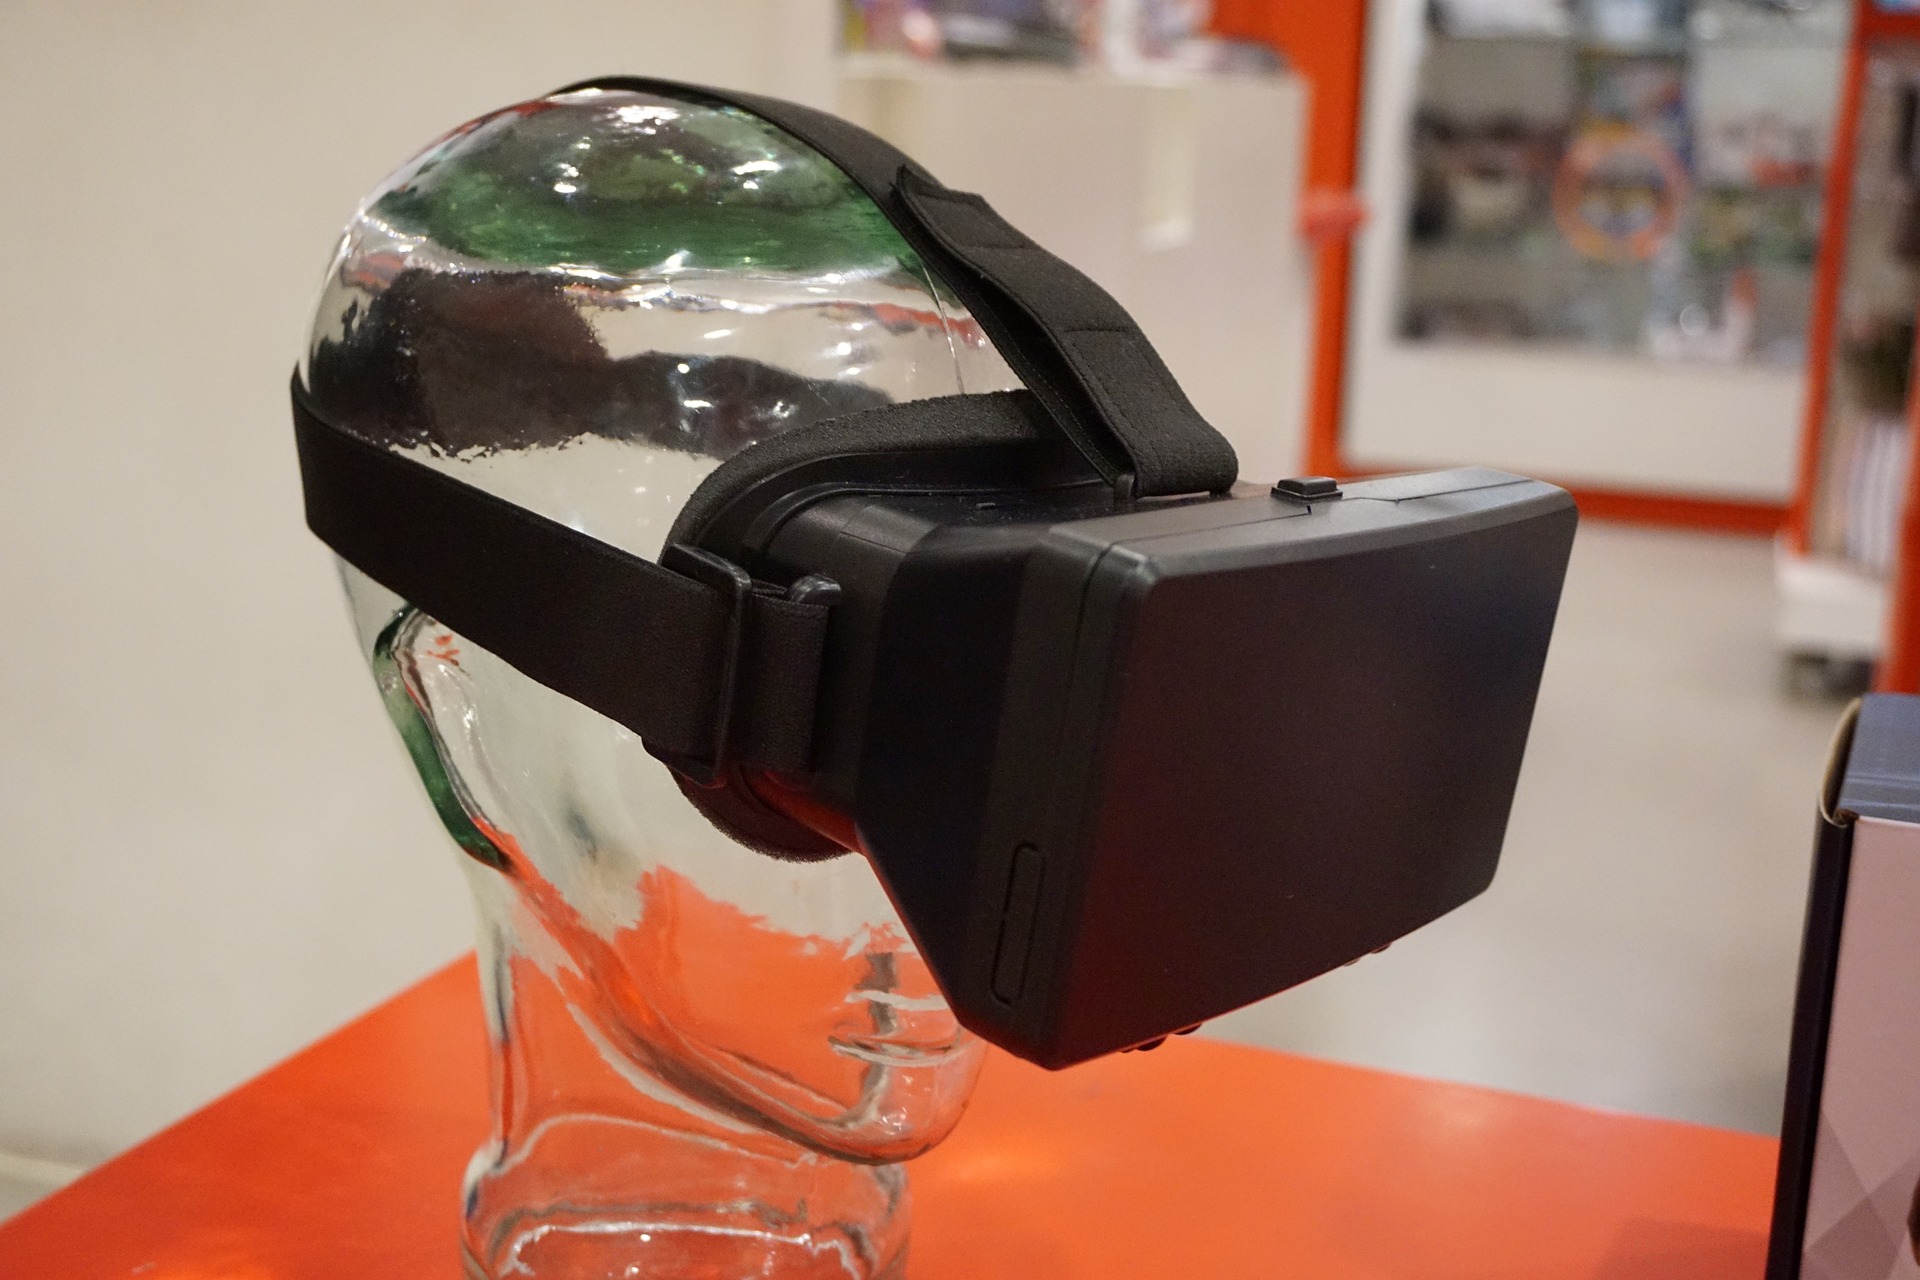 La realtà virtuale come supporto per ristoranti